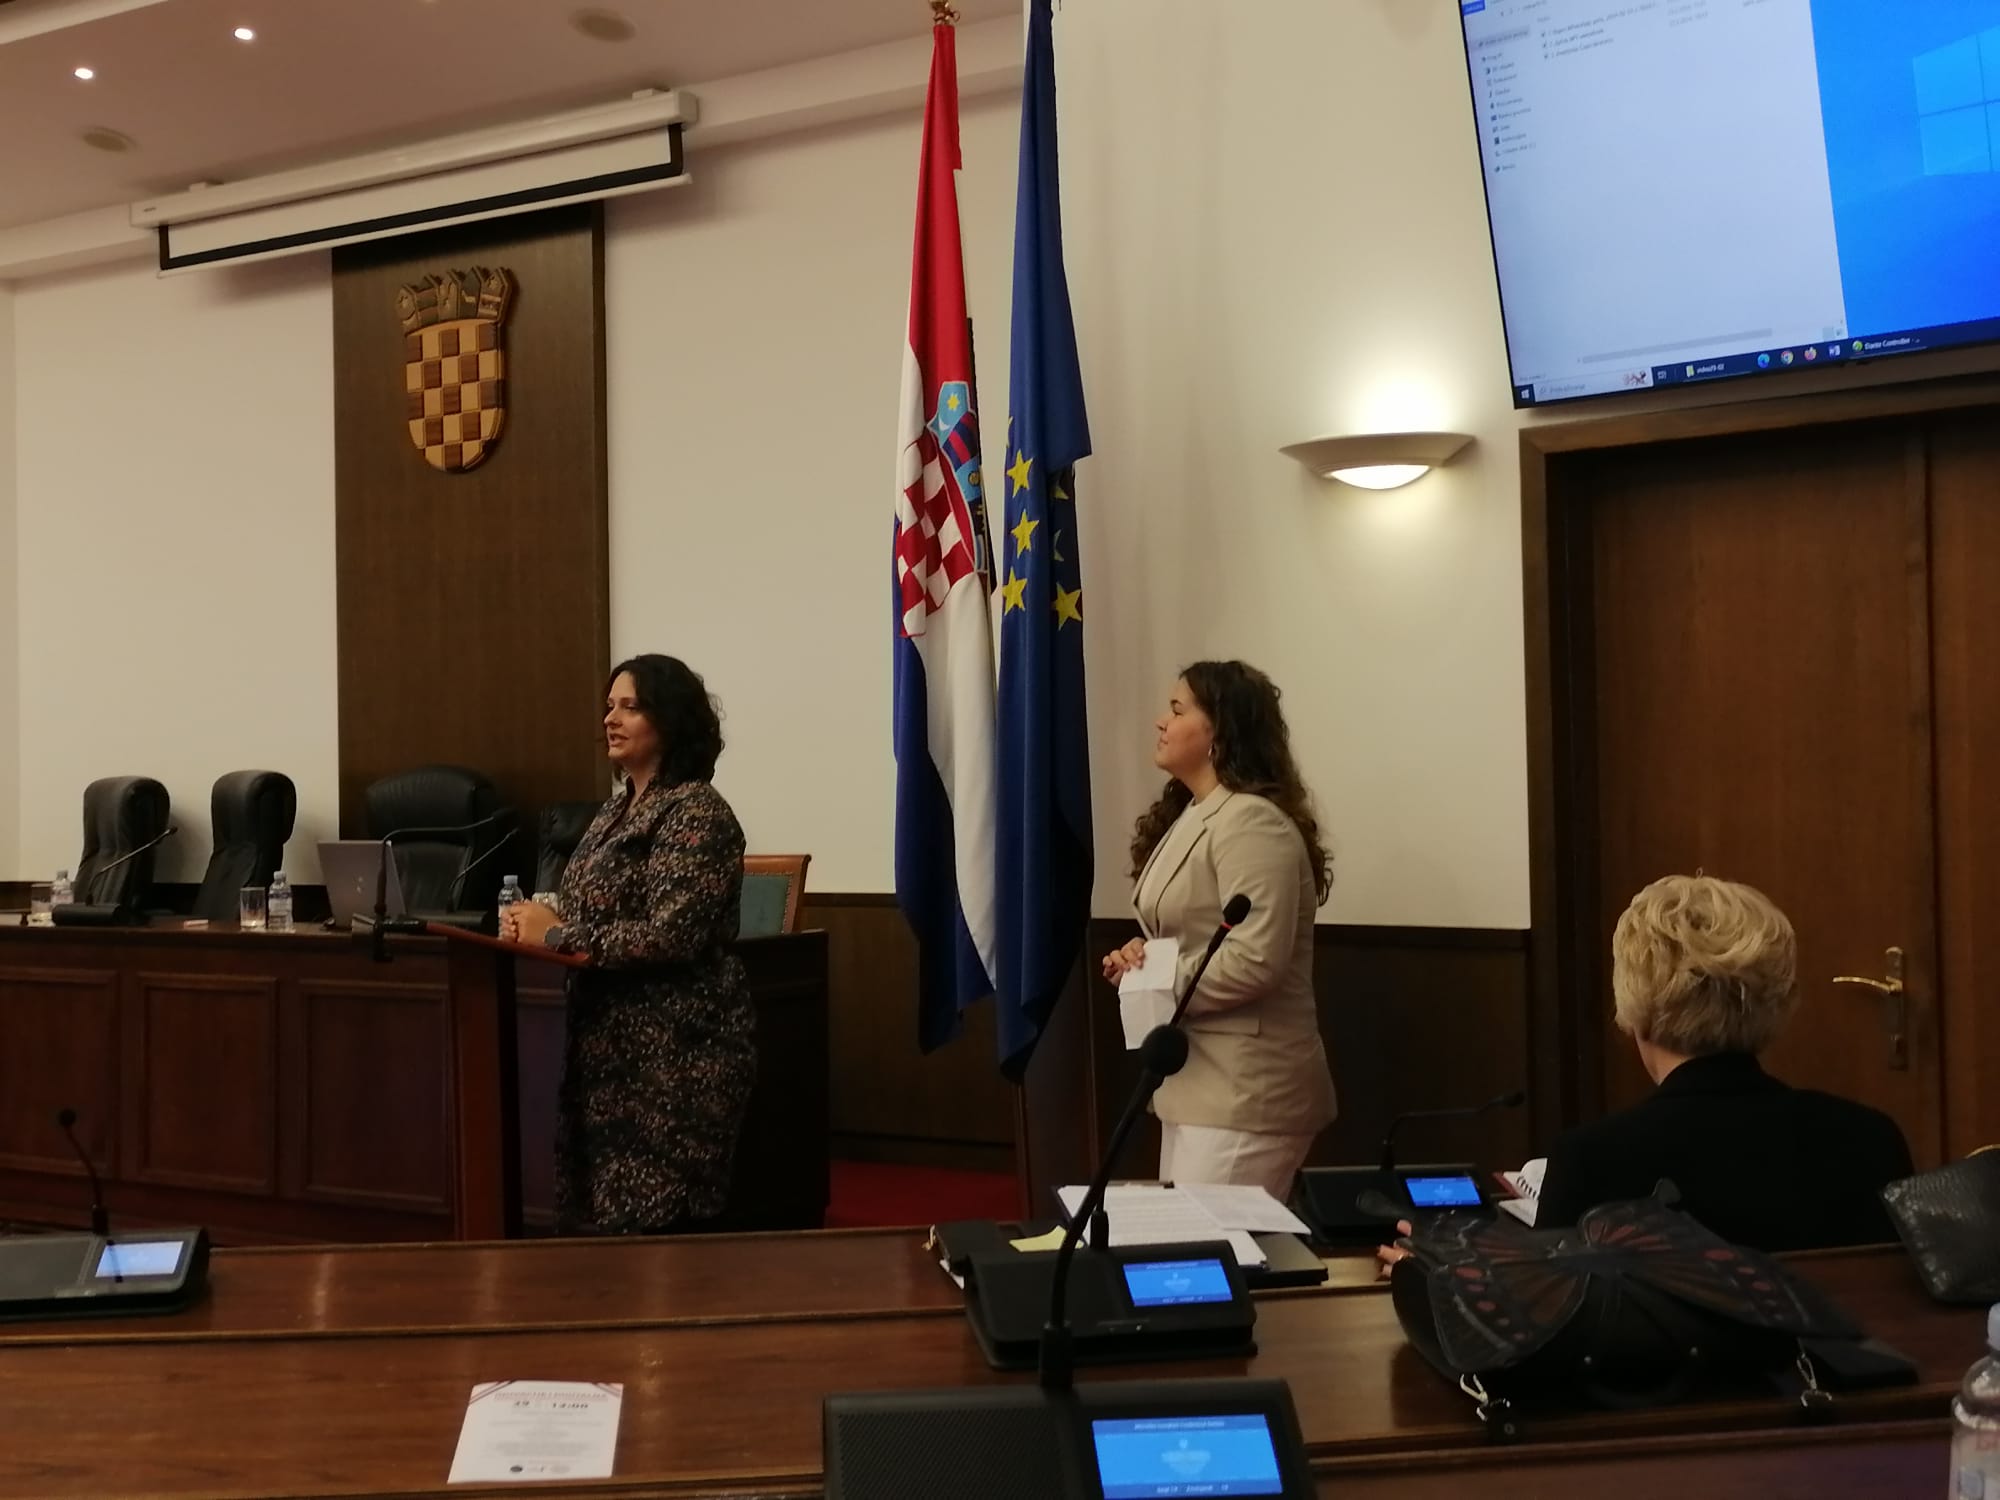 eTwinningovi projekti predstavljeni u Hrvatskom saboru kao primjeri dobre prakse - Slika 2